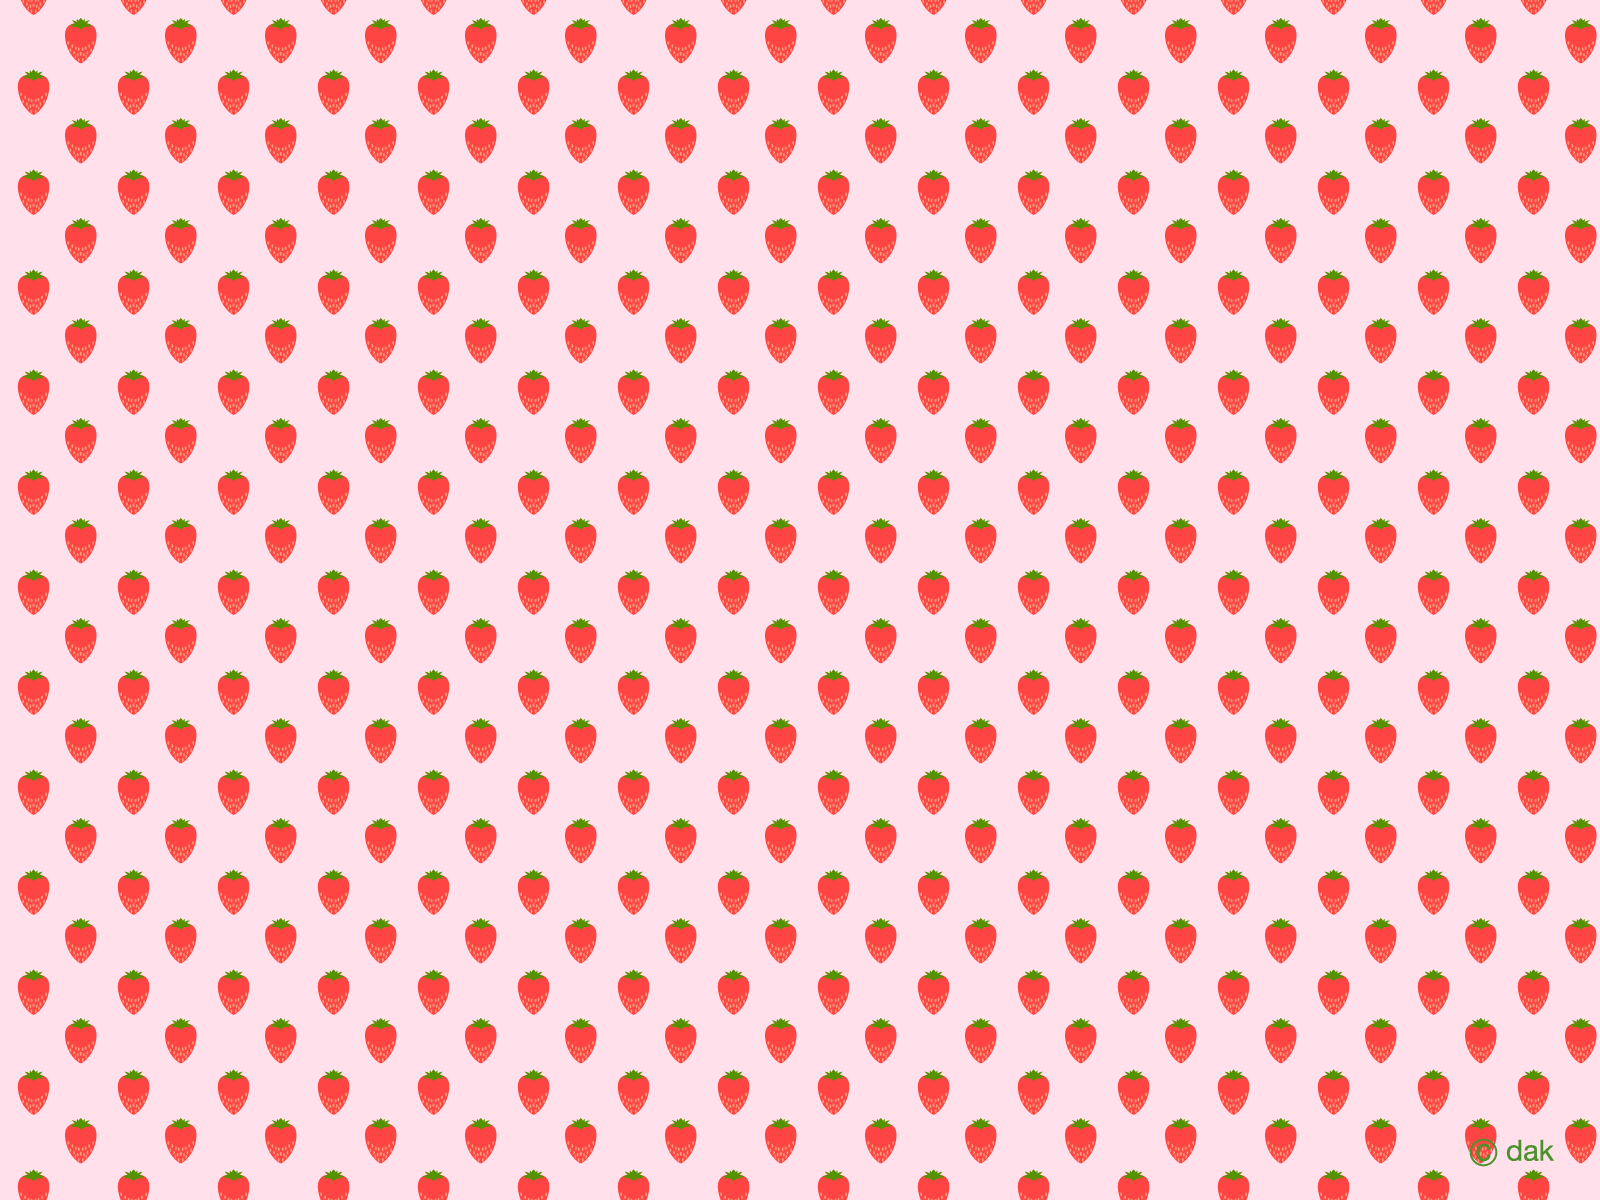 Cute Strawberry DesktopWallpapers